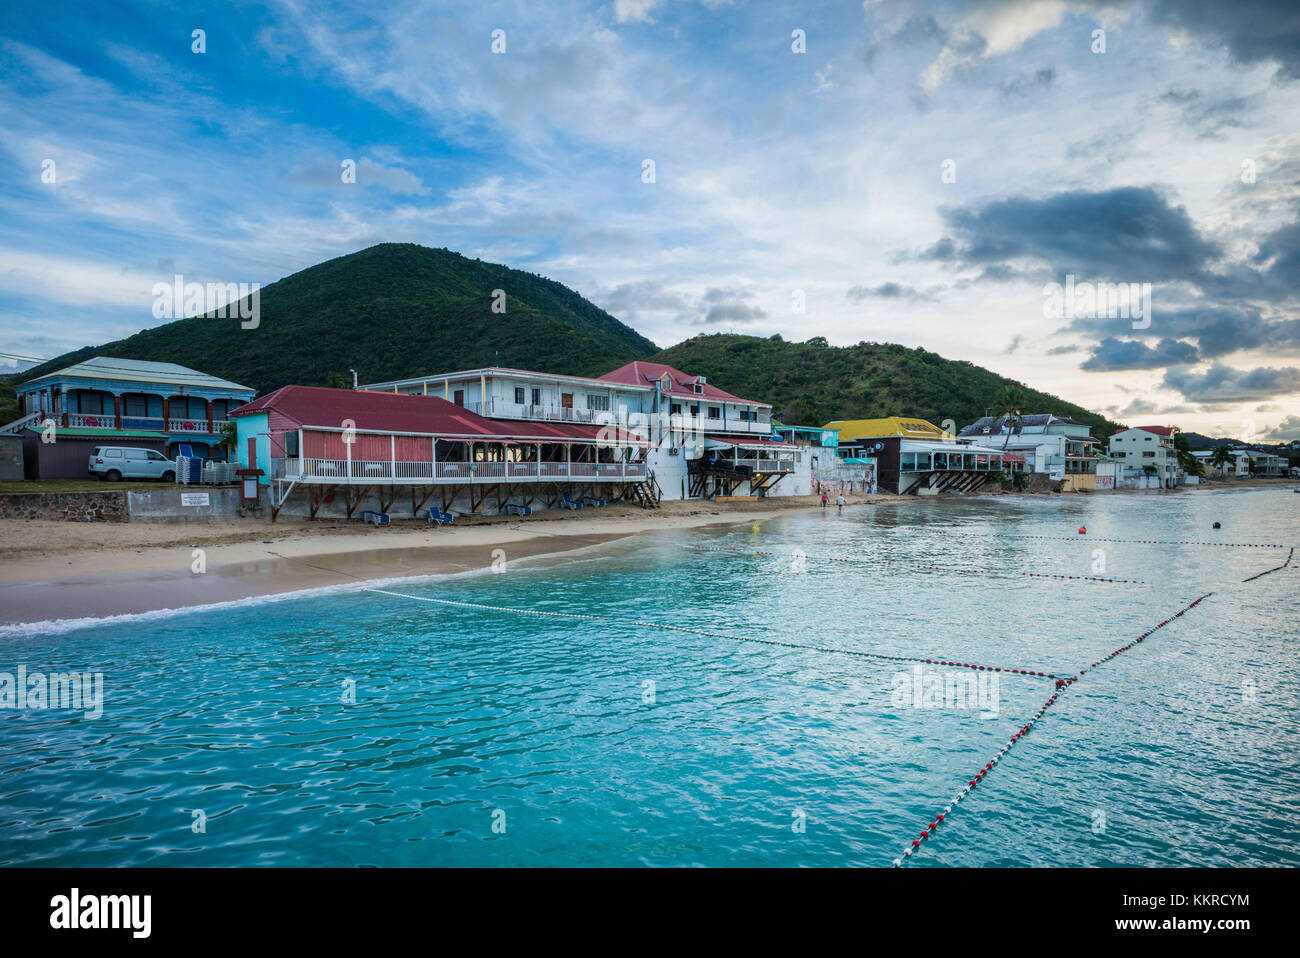 French West Indies, St-Martin, Grand Case, capitale gastronomique de la Caraïbe, waterfront, dusk Banque D'Images